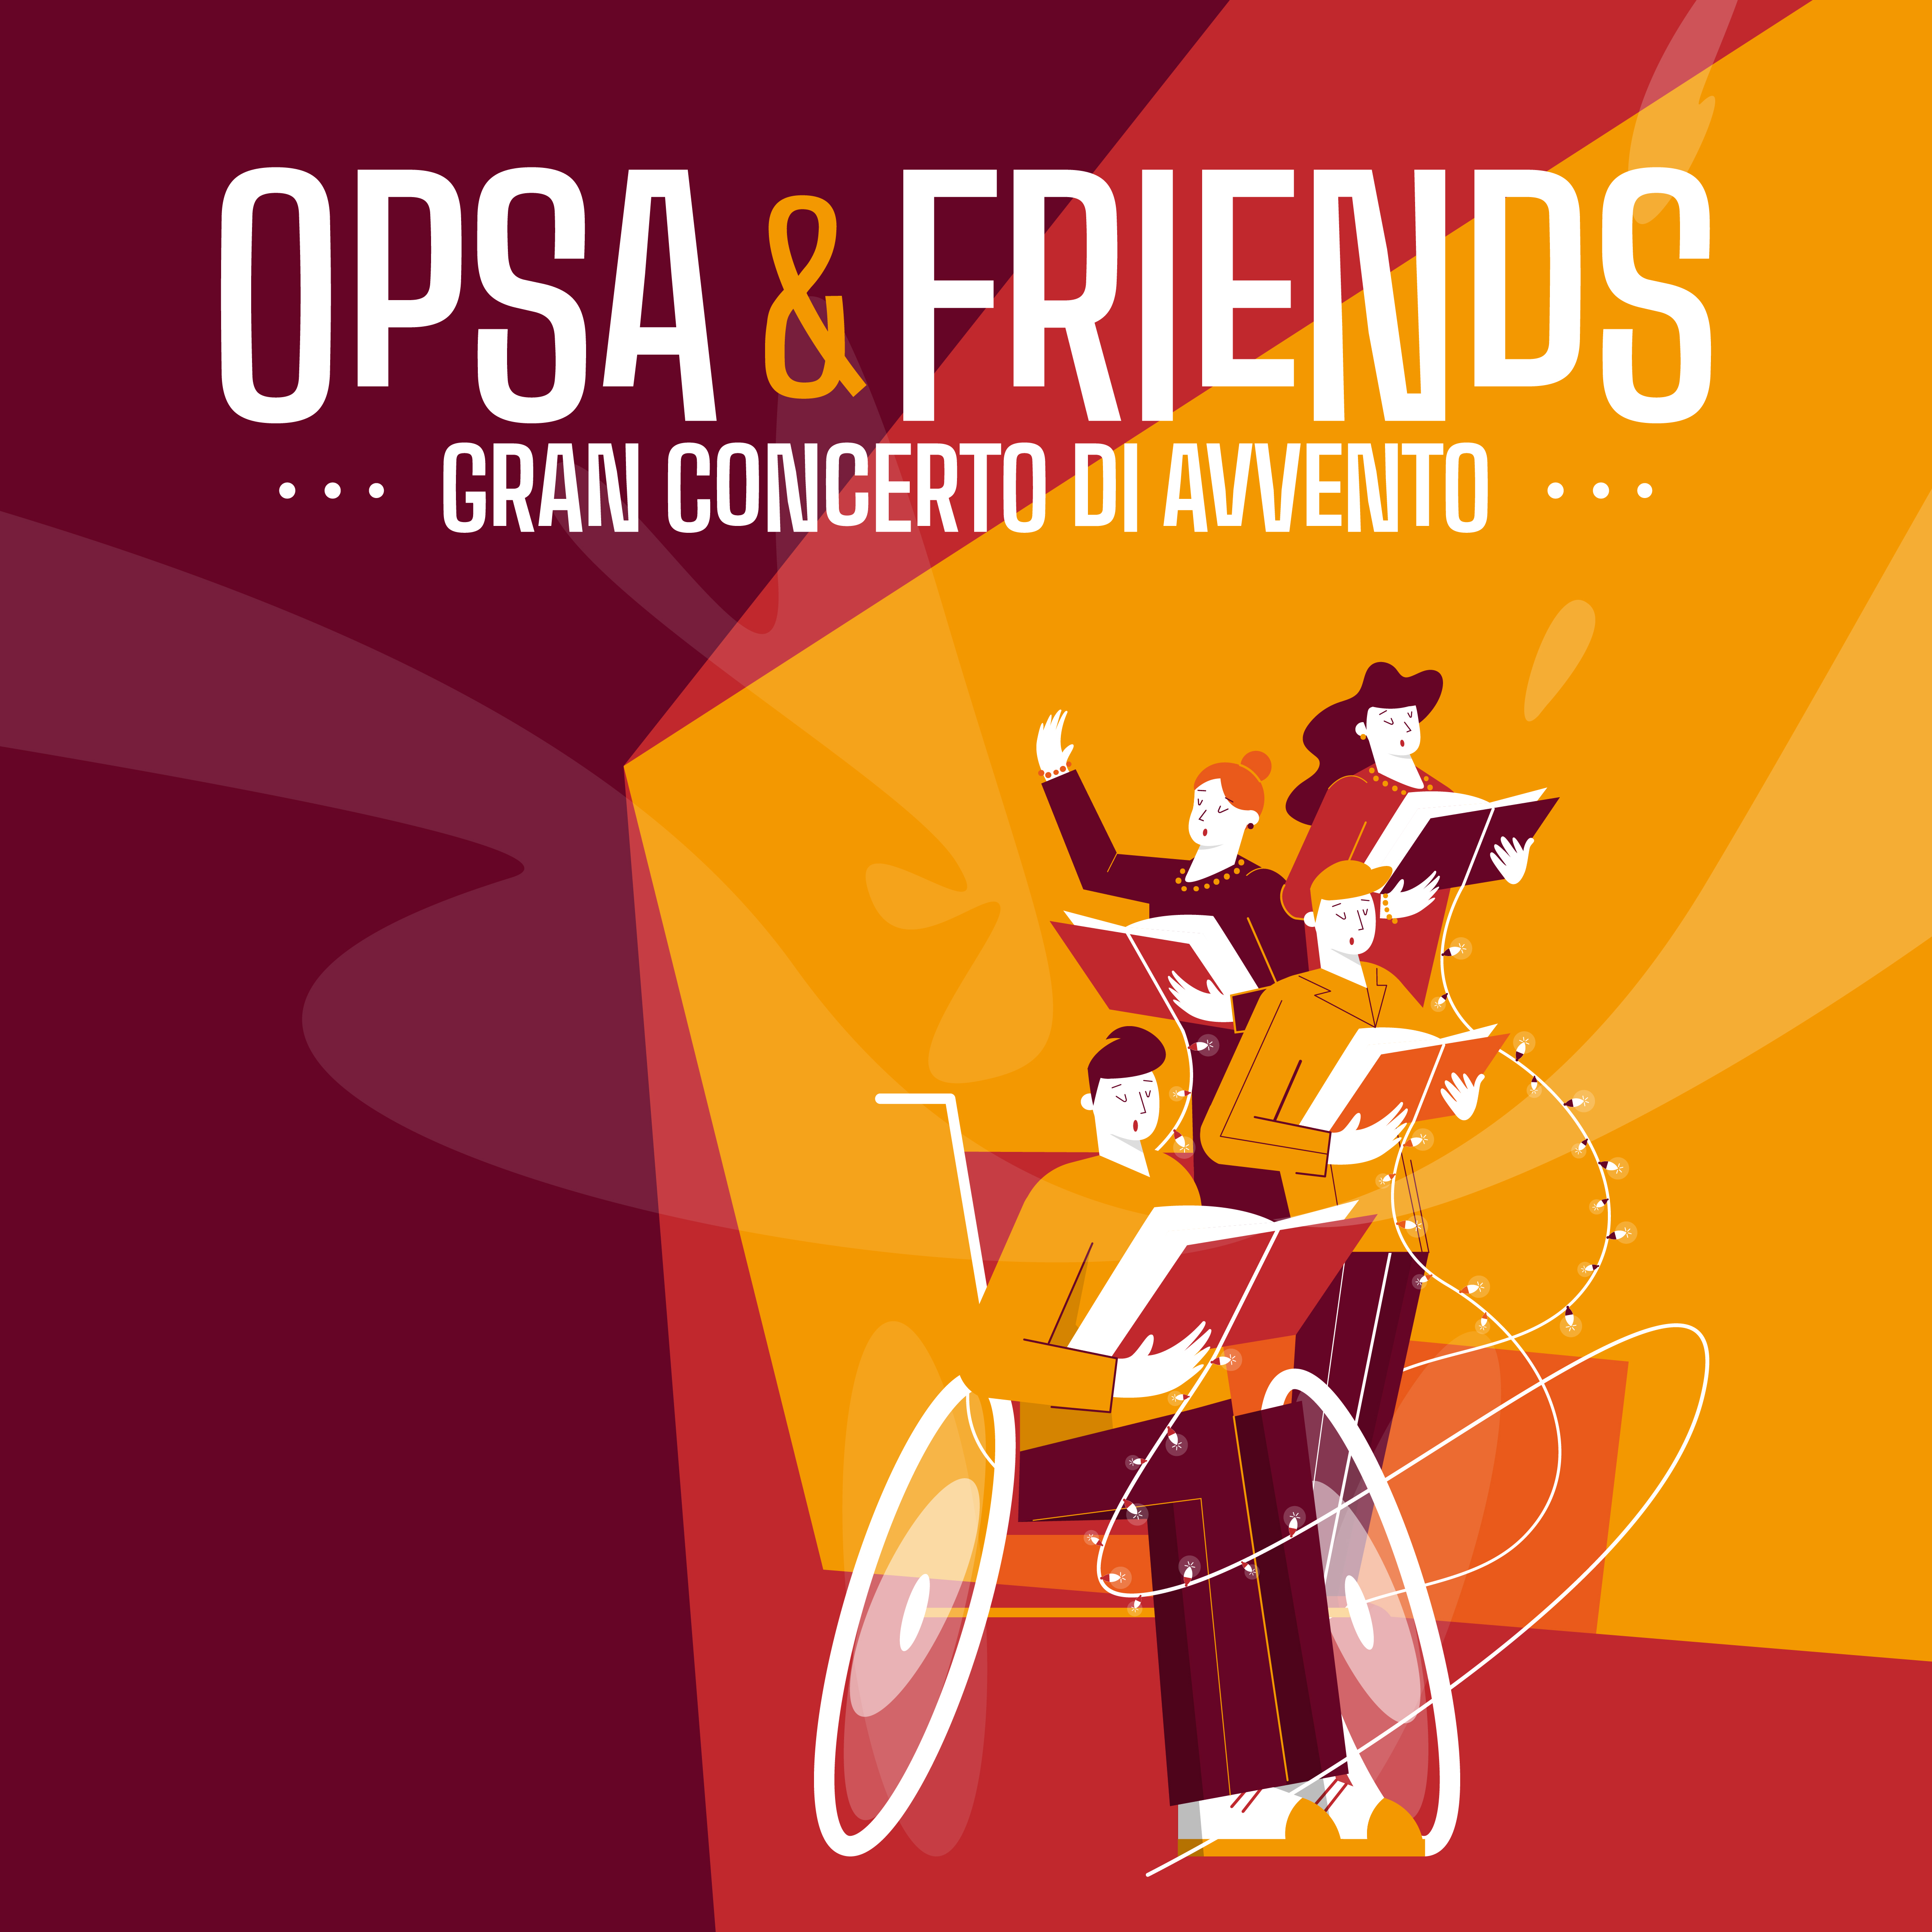 OPSA & FRIENDS